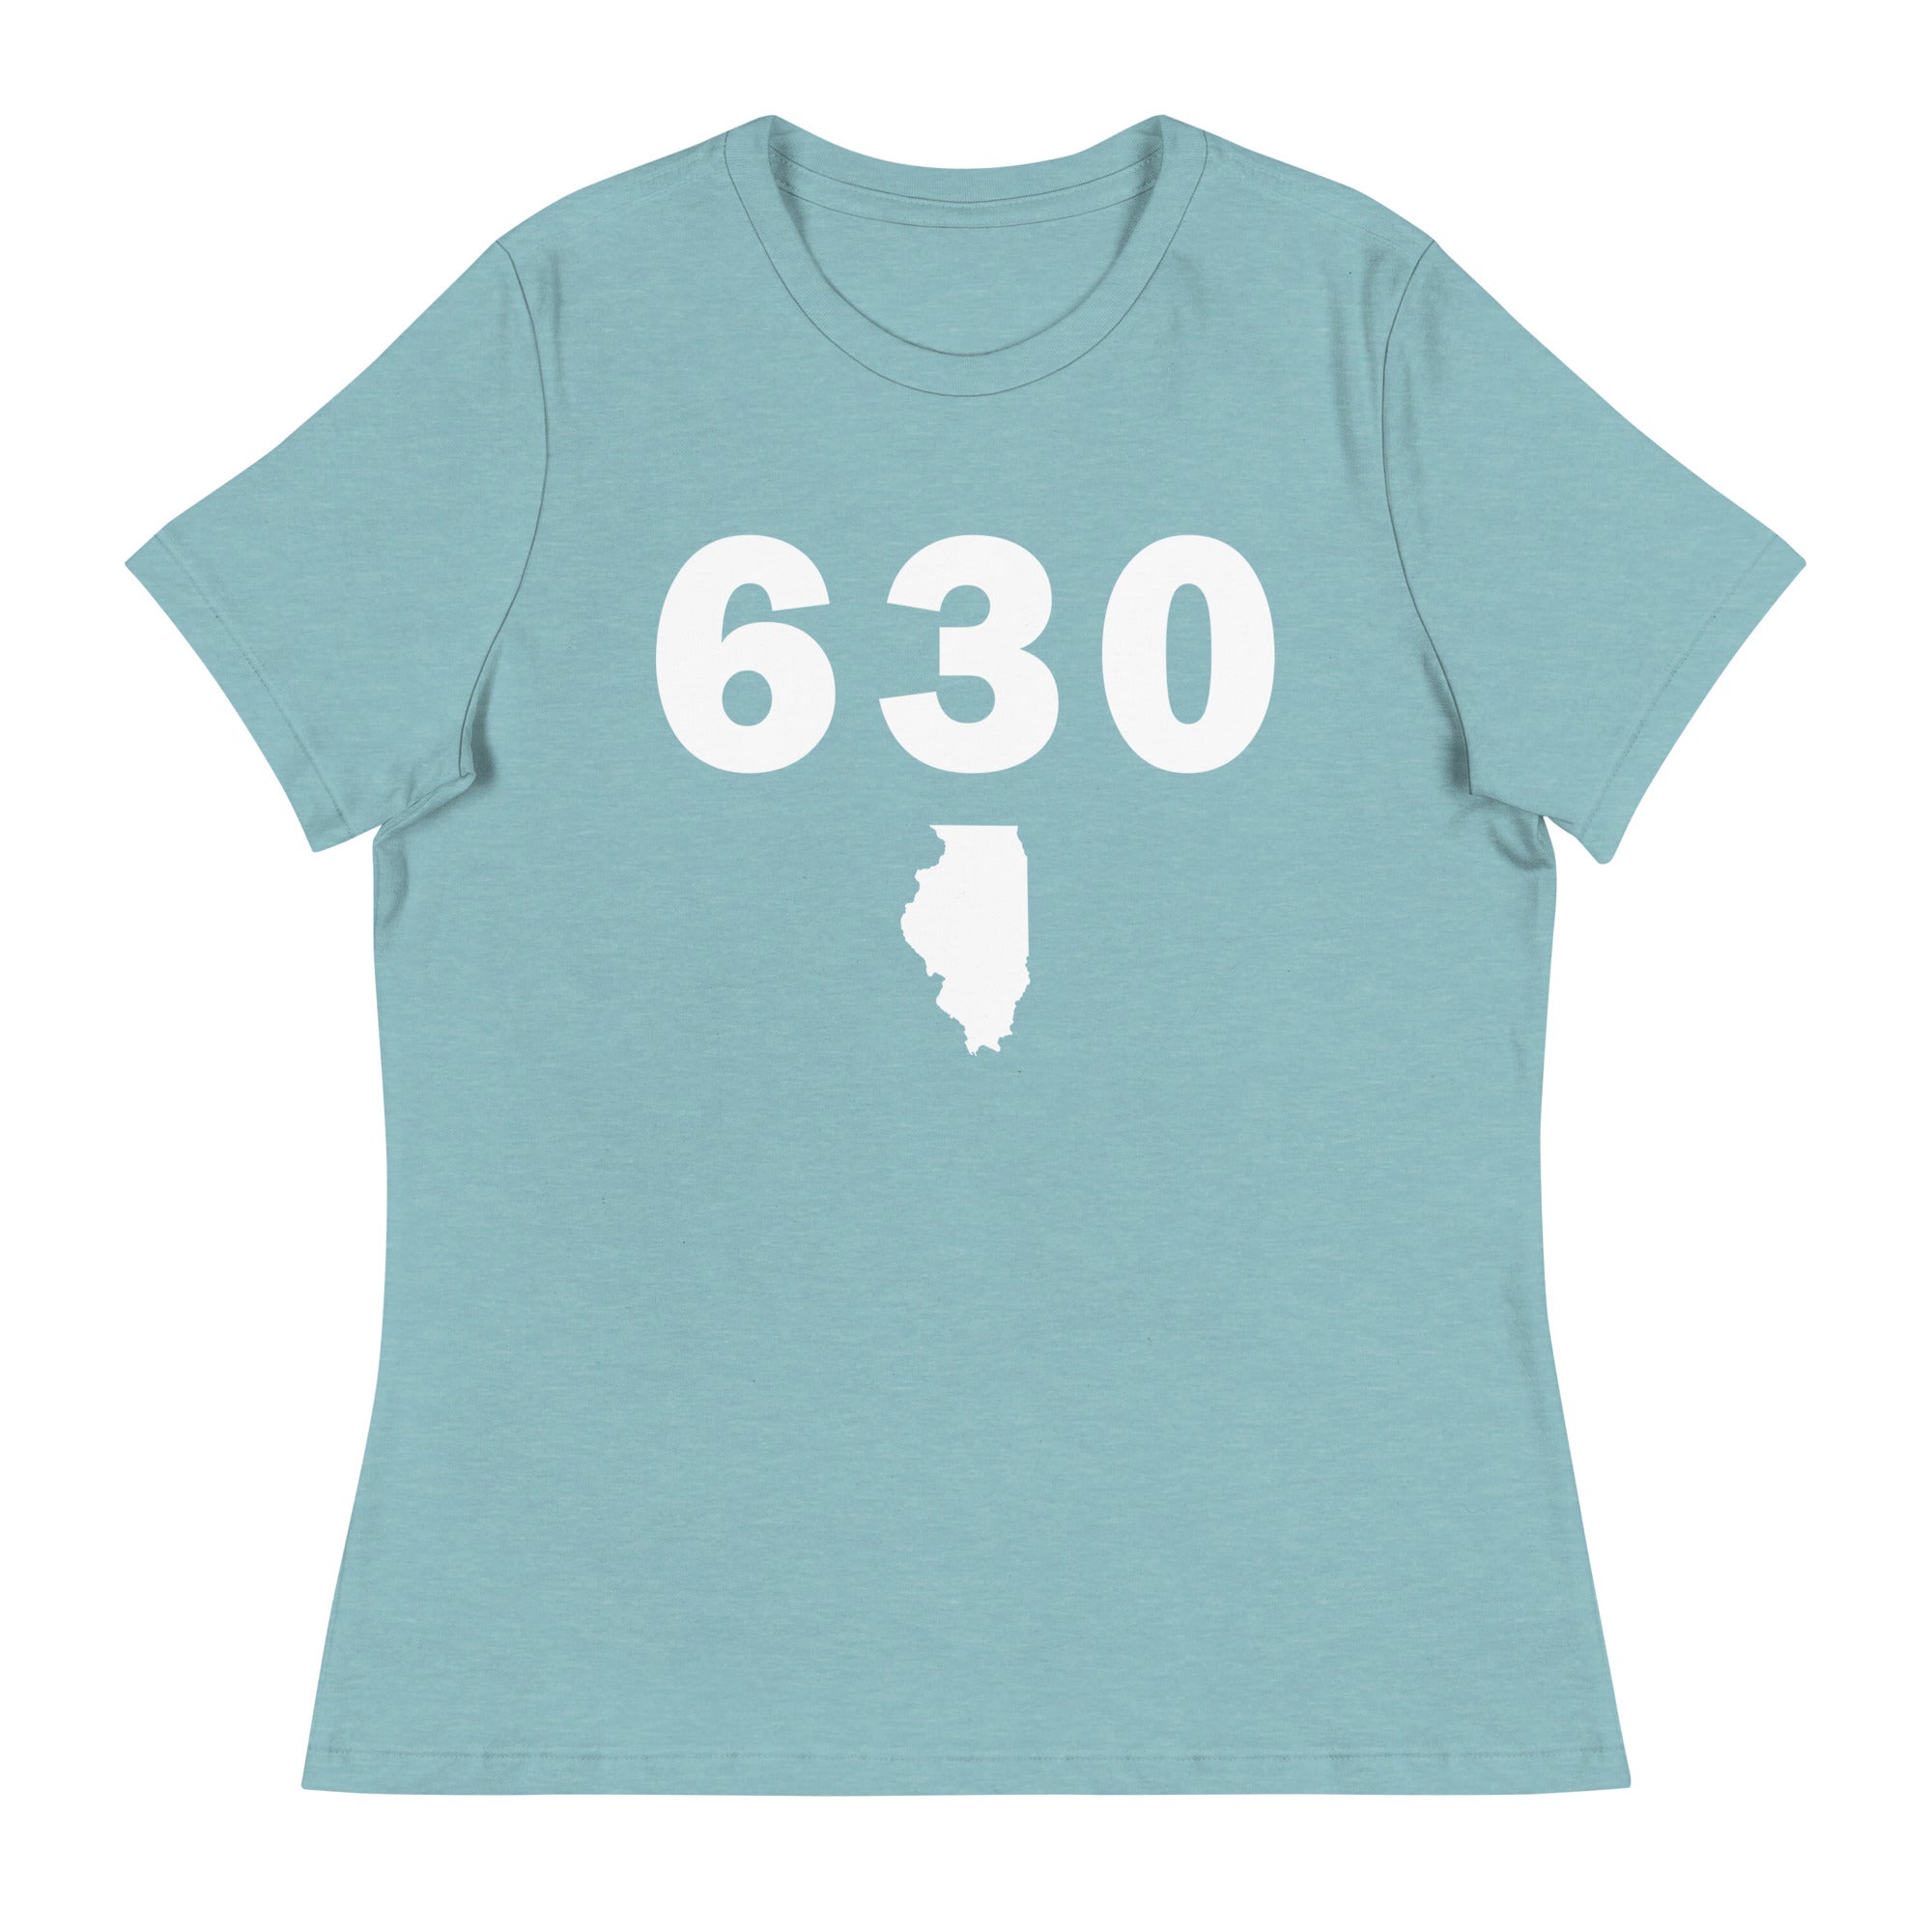 38 Special Women's T-Shirt by Legi Gura - Pixels